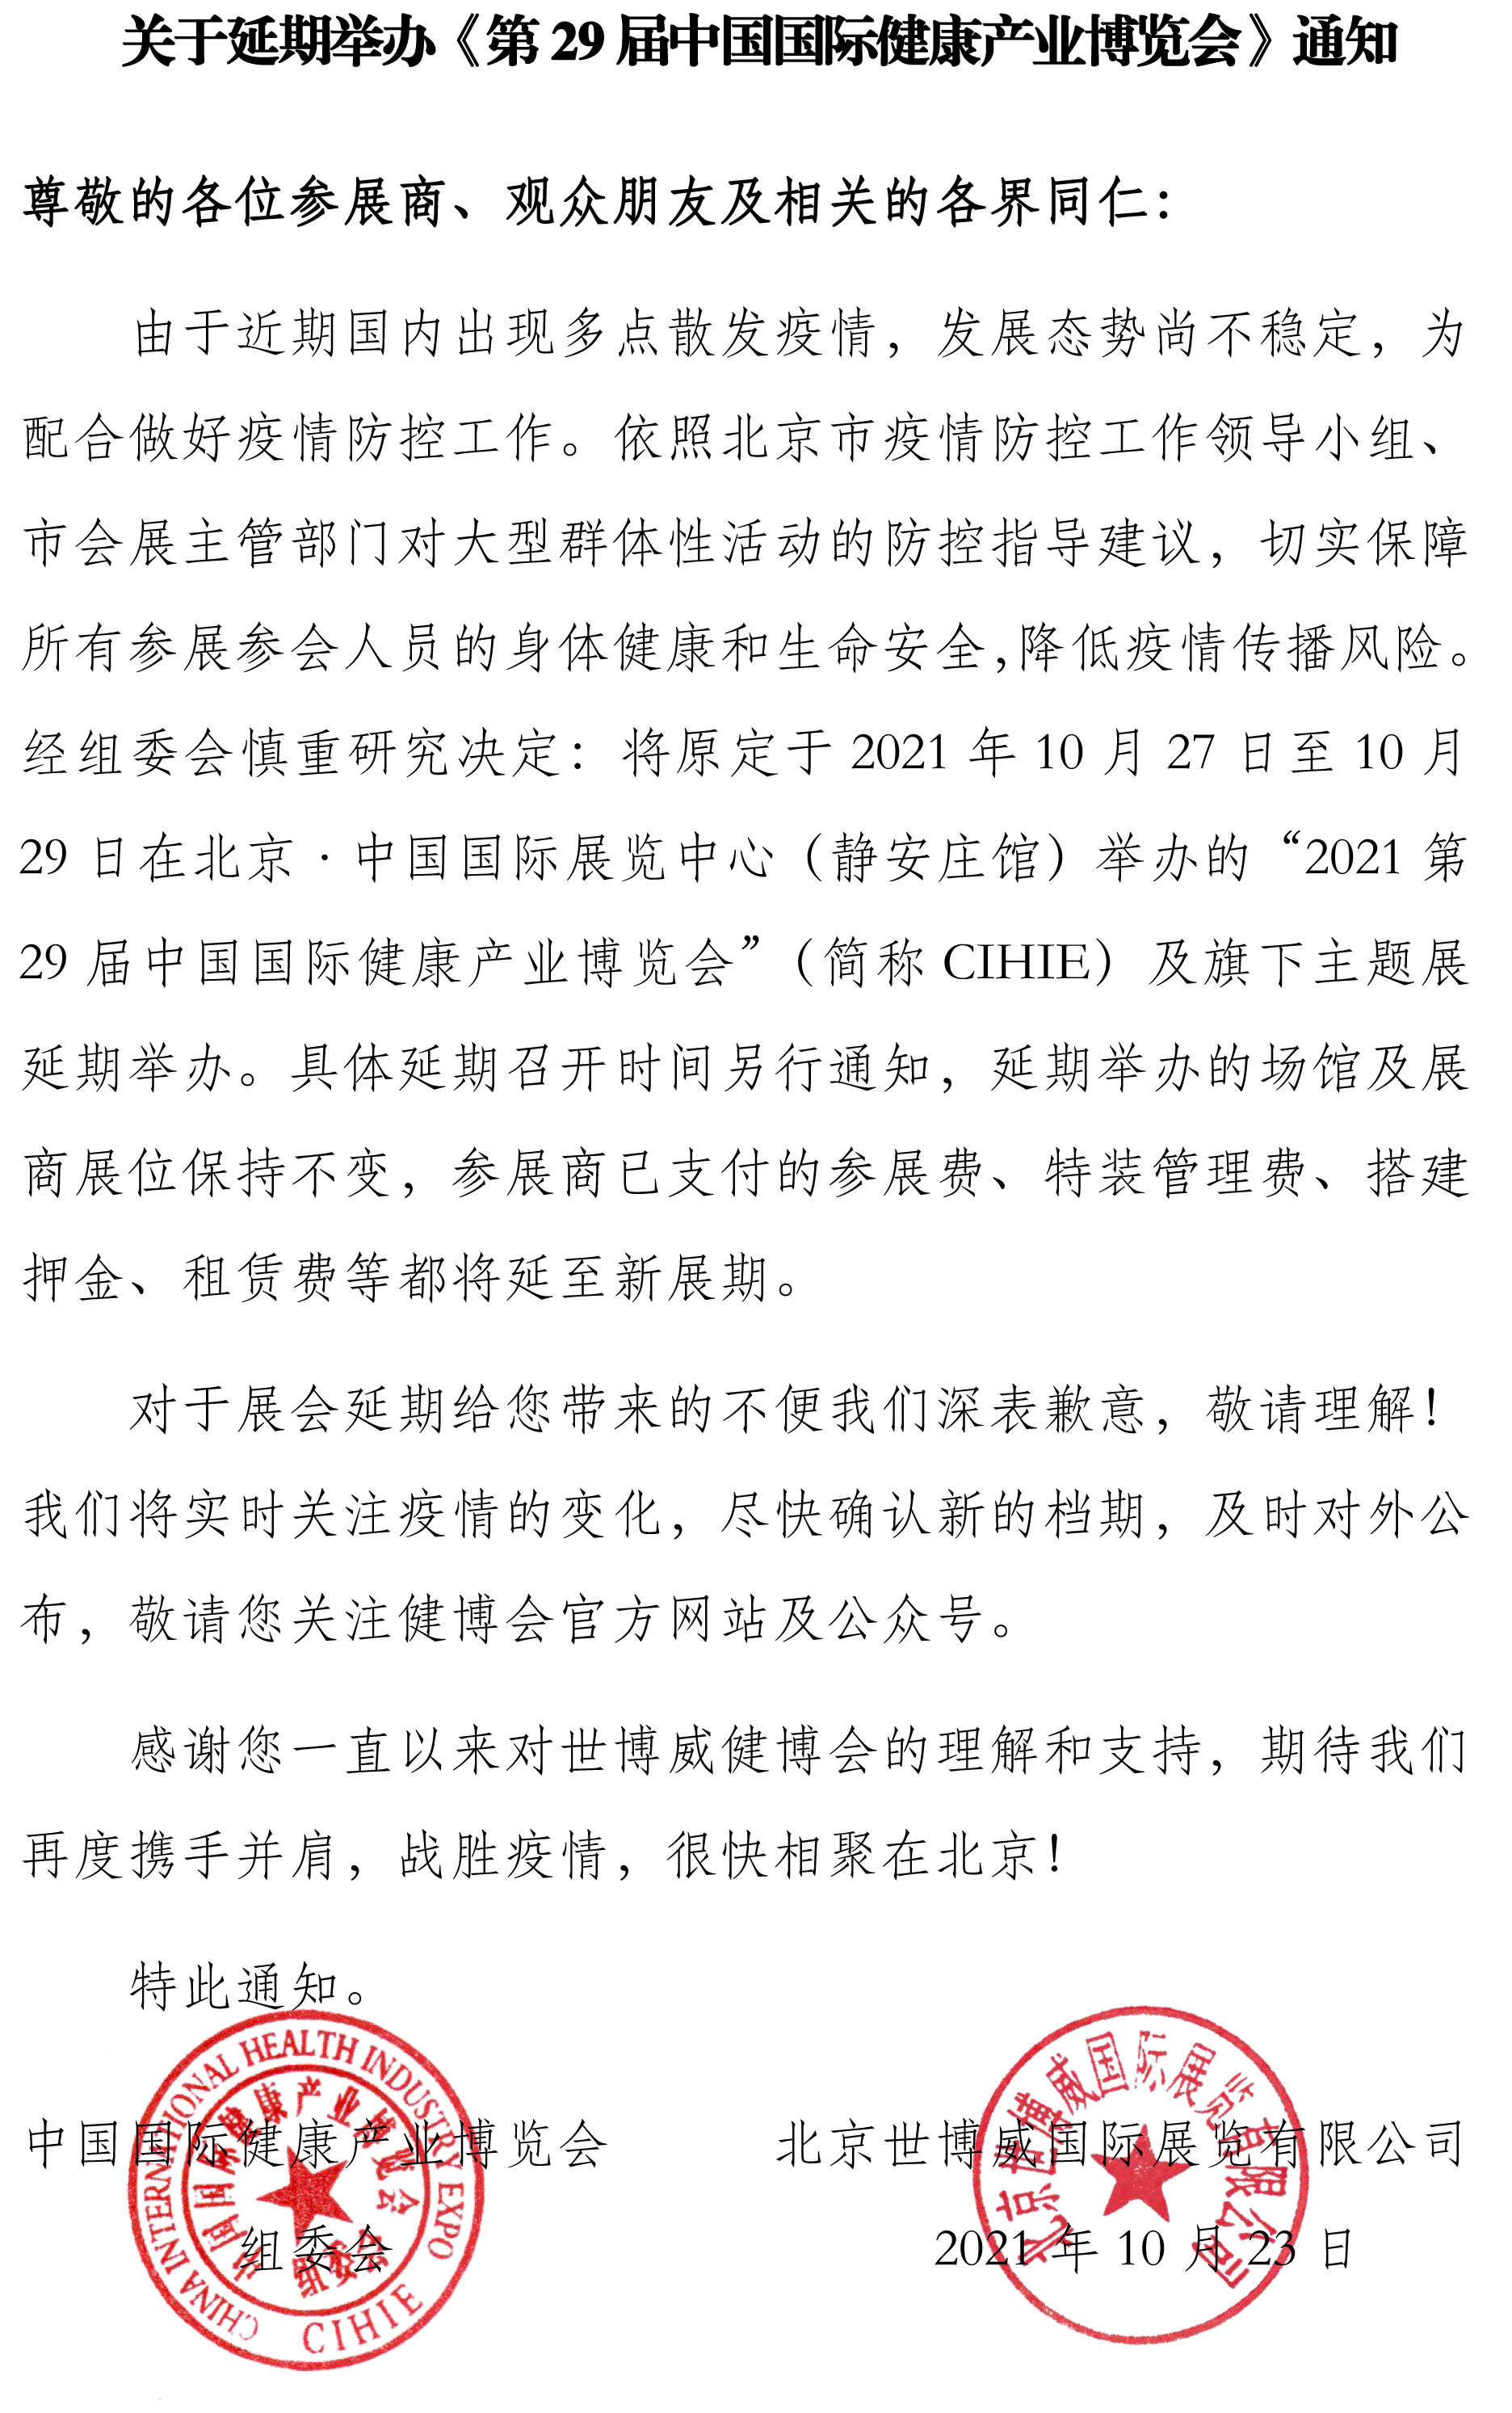 【延期通知】CIHIE 第29届中国国际健康产业博览会延期举办